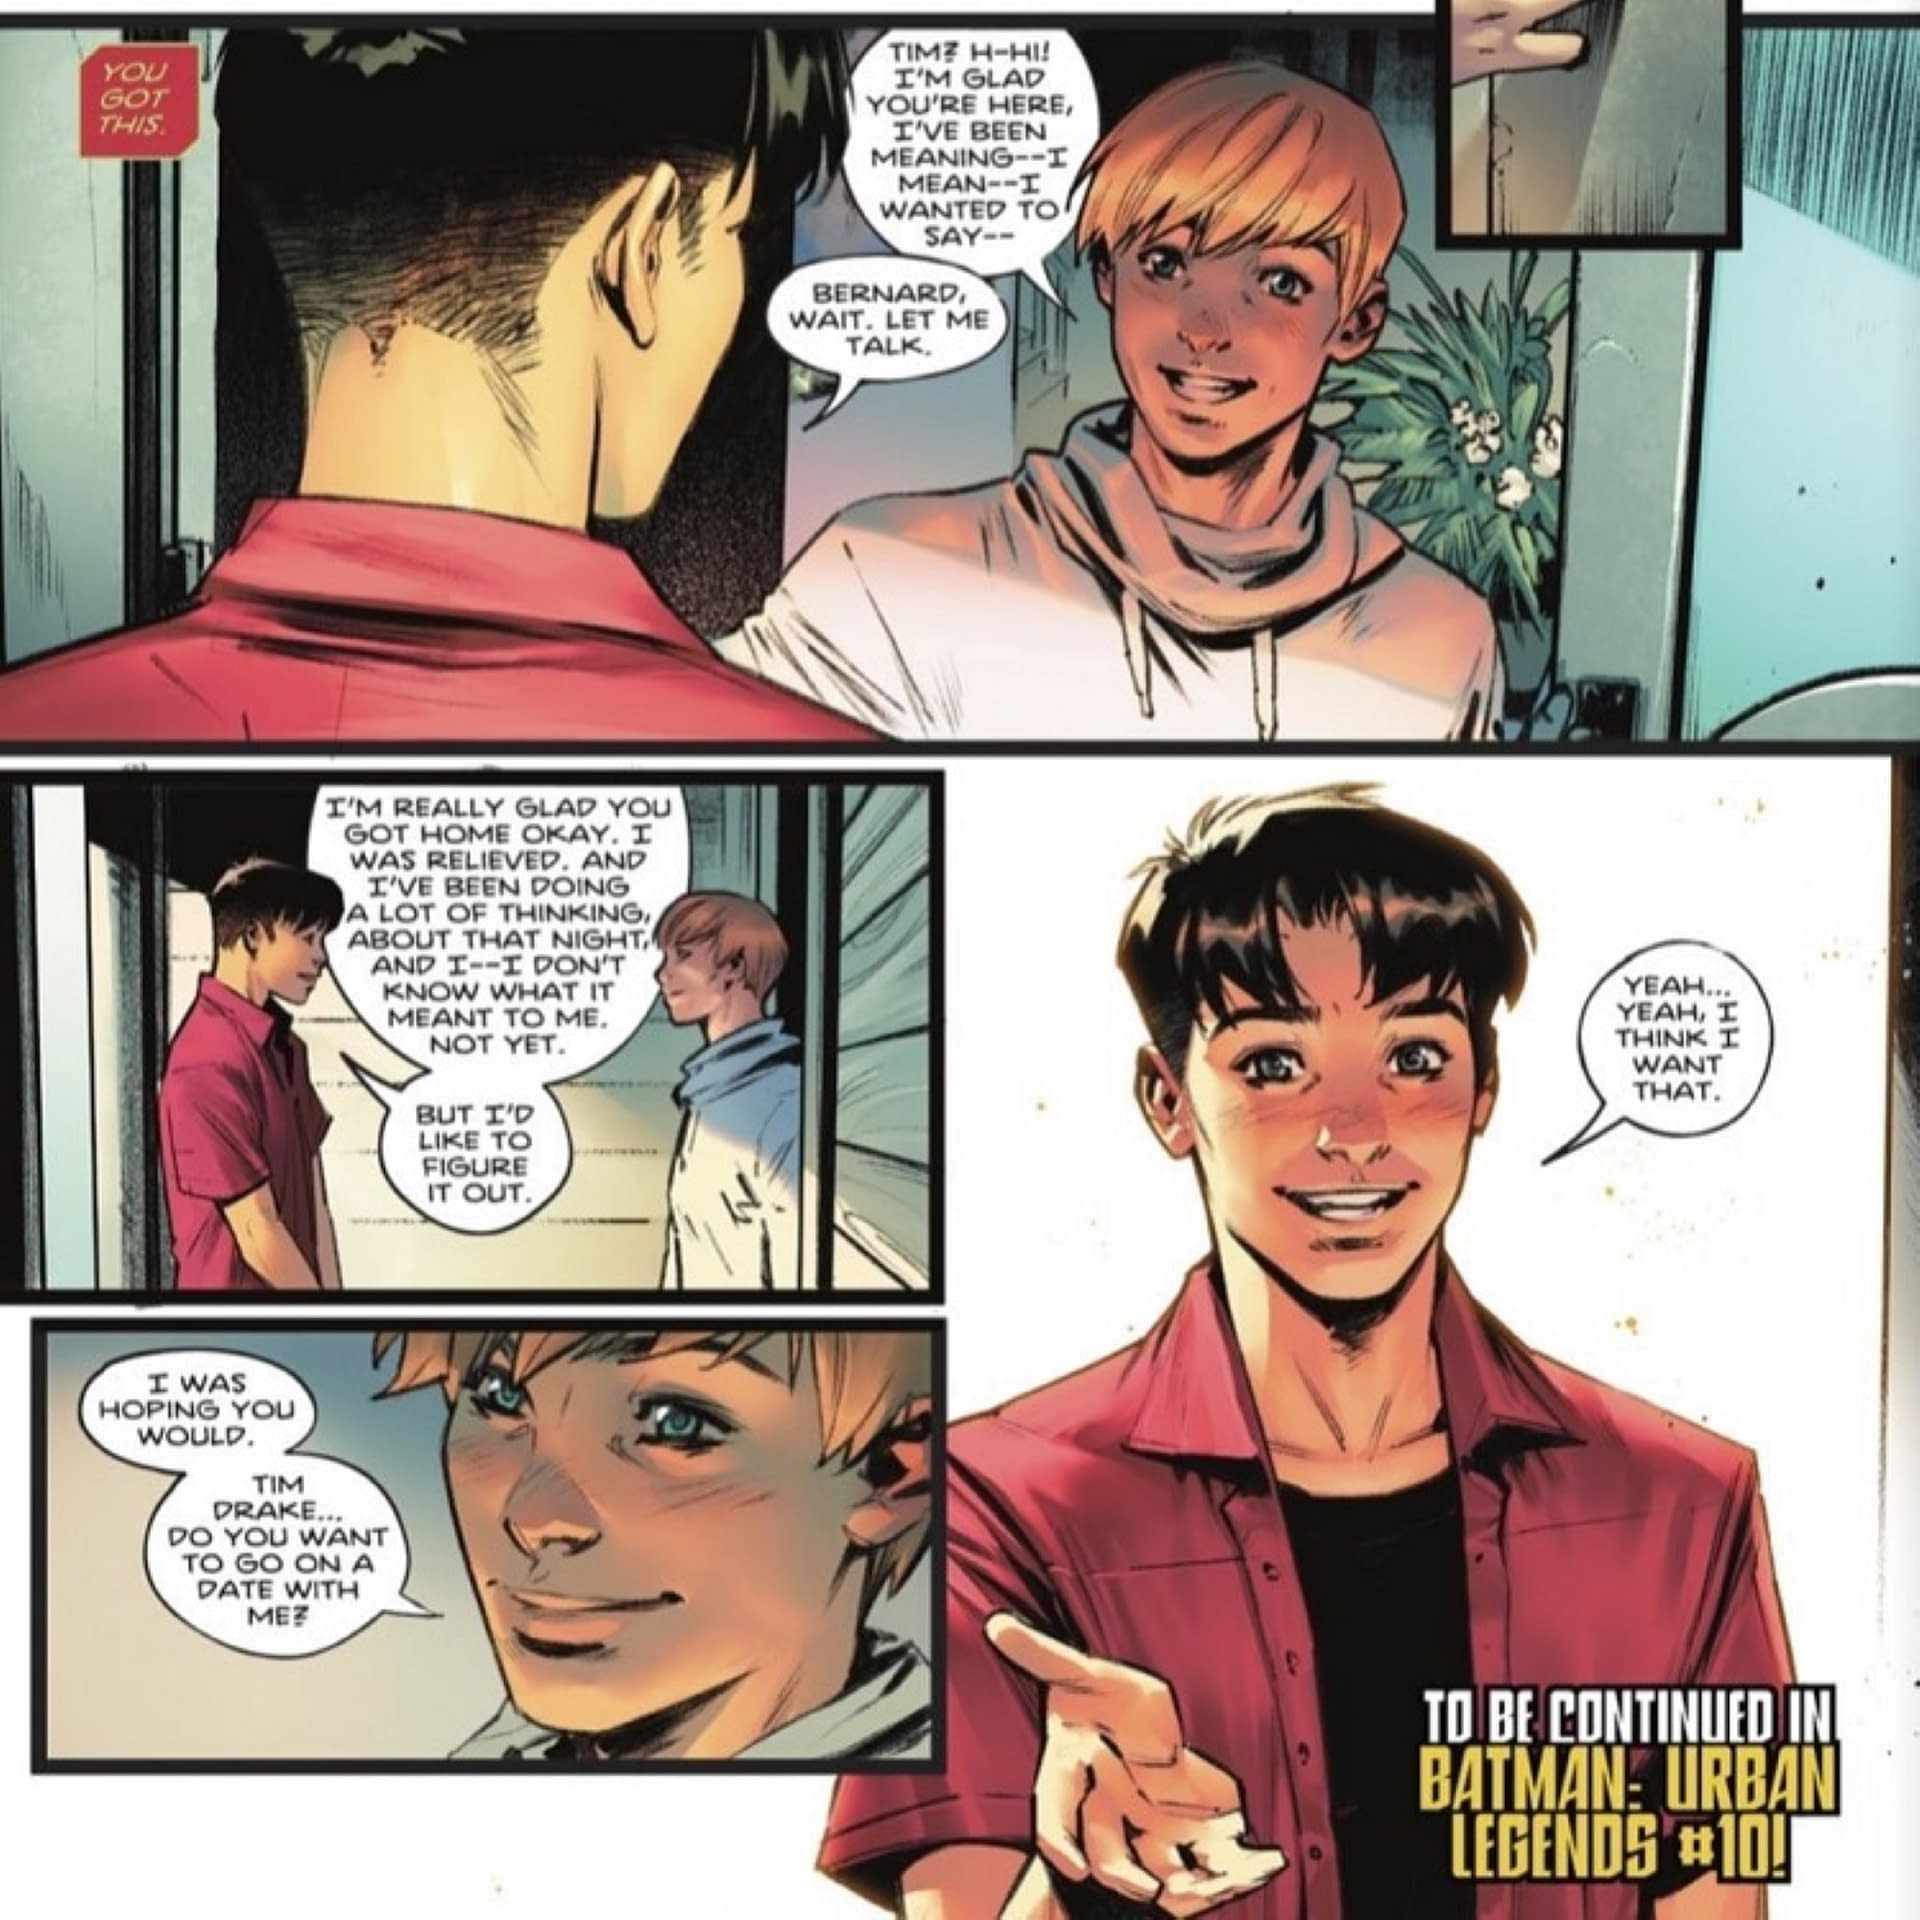 Bisexual Robin Sees Batman Urban Legends #6 Get A Second Print